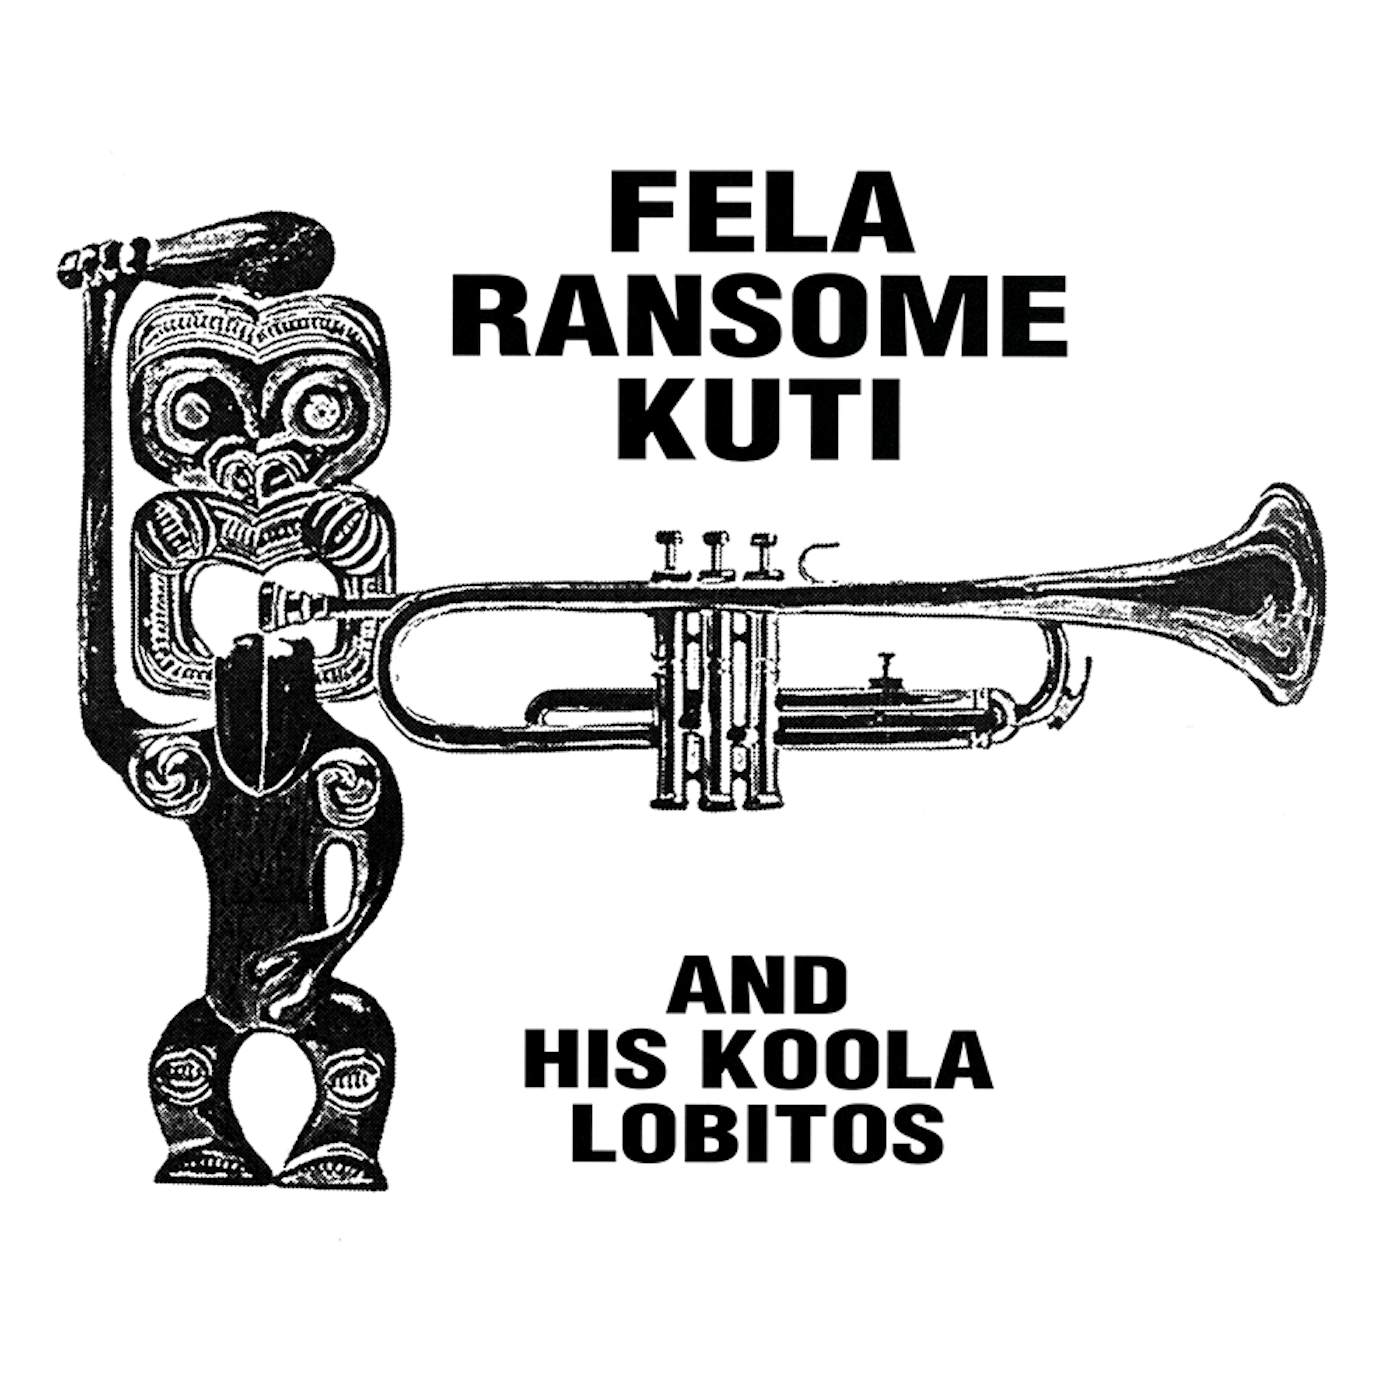 Fela Ransome Kuti & His Koola Lobitos HIGHLIFE-JAZZ & AFRO-SOUL (1963-1969) CD